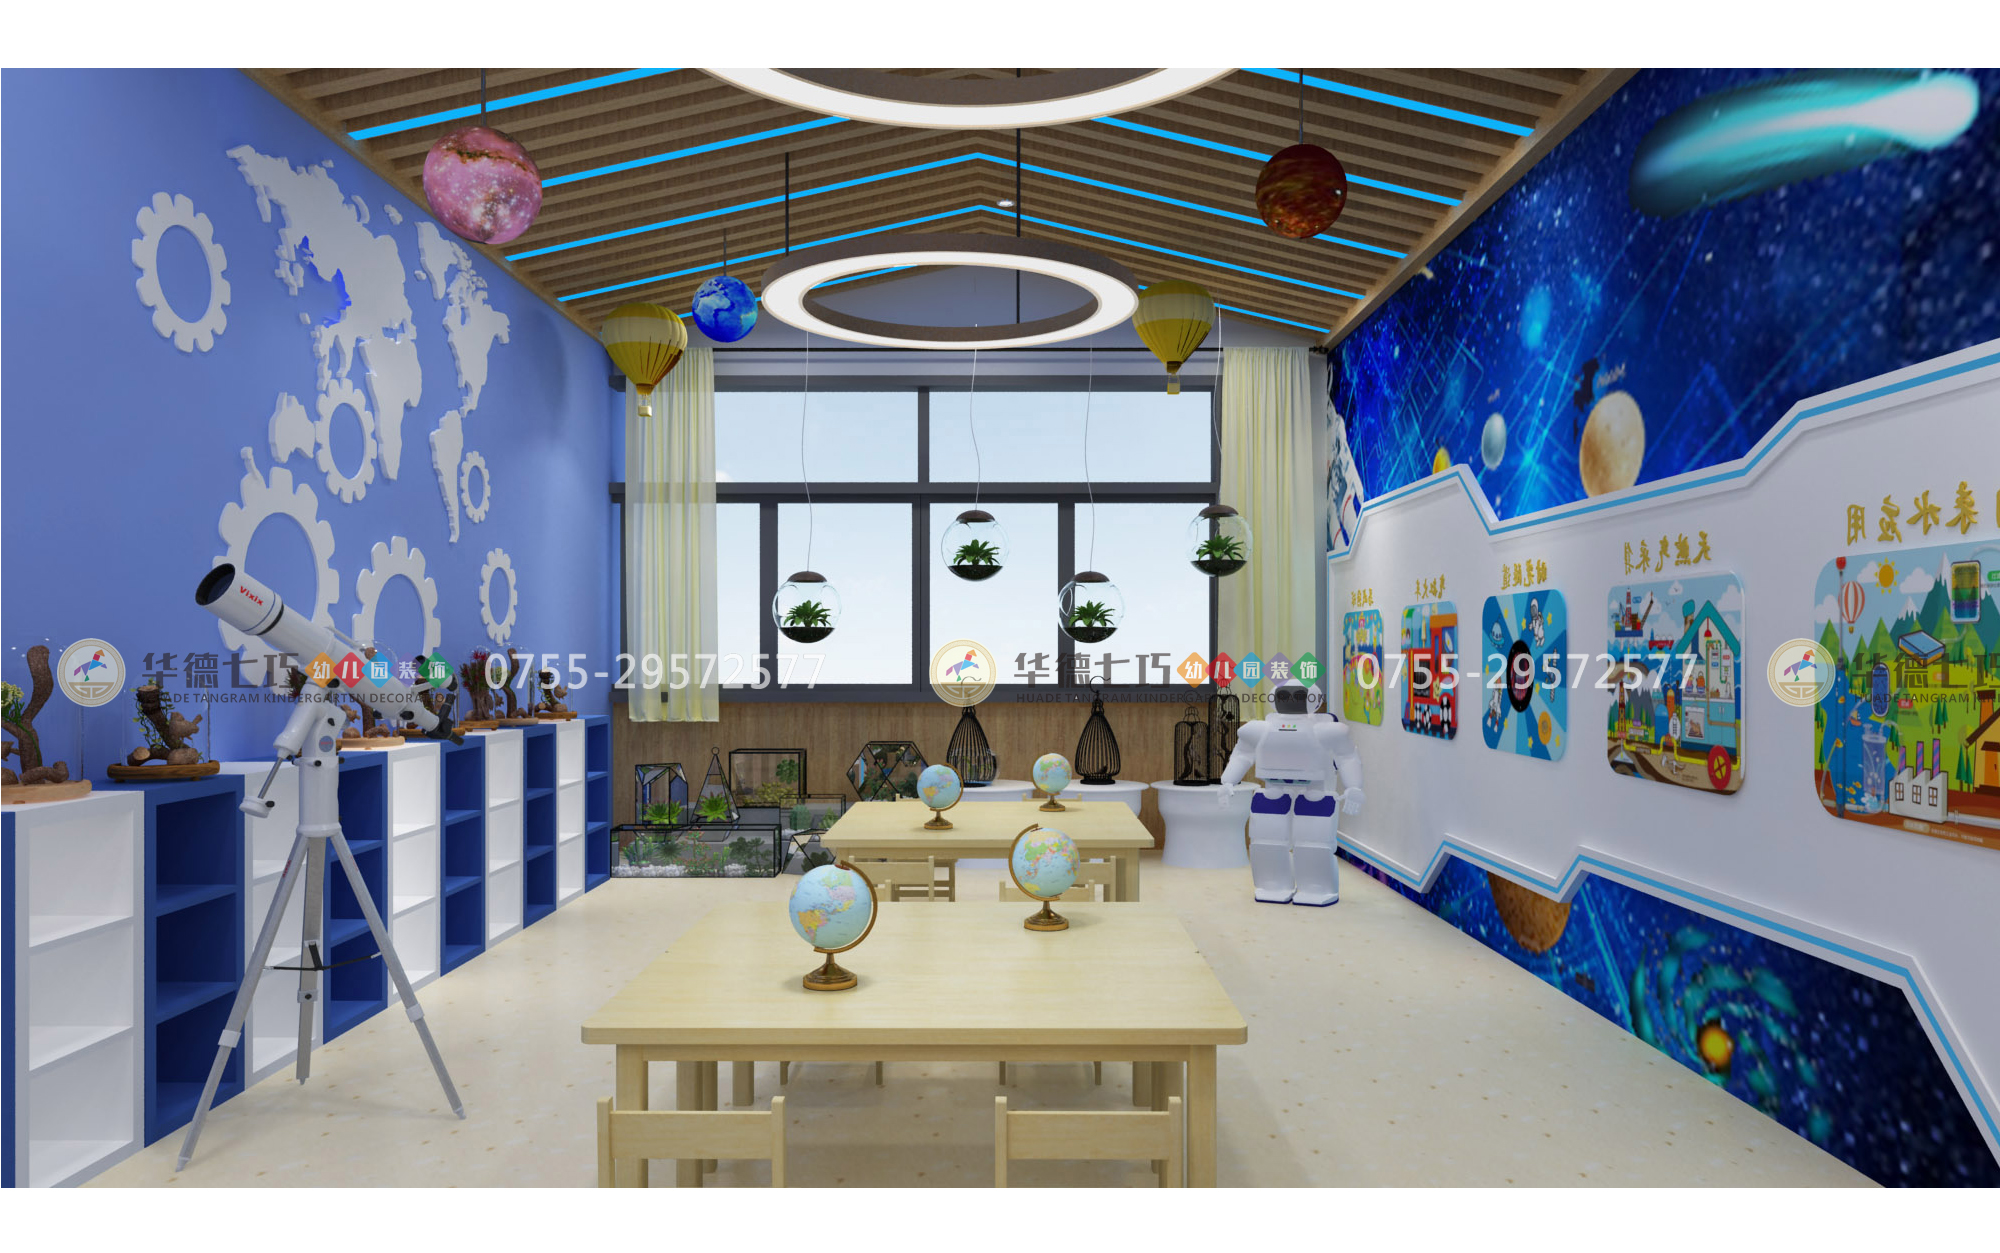 如何设计好一所幼儿园的室内环境?